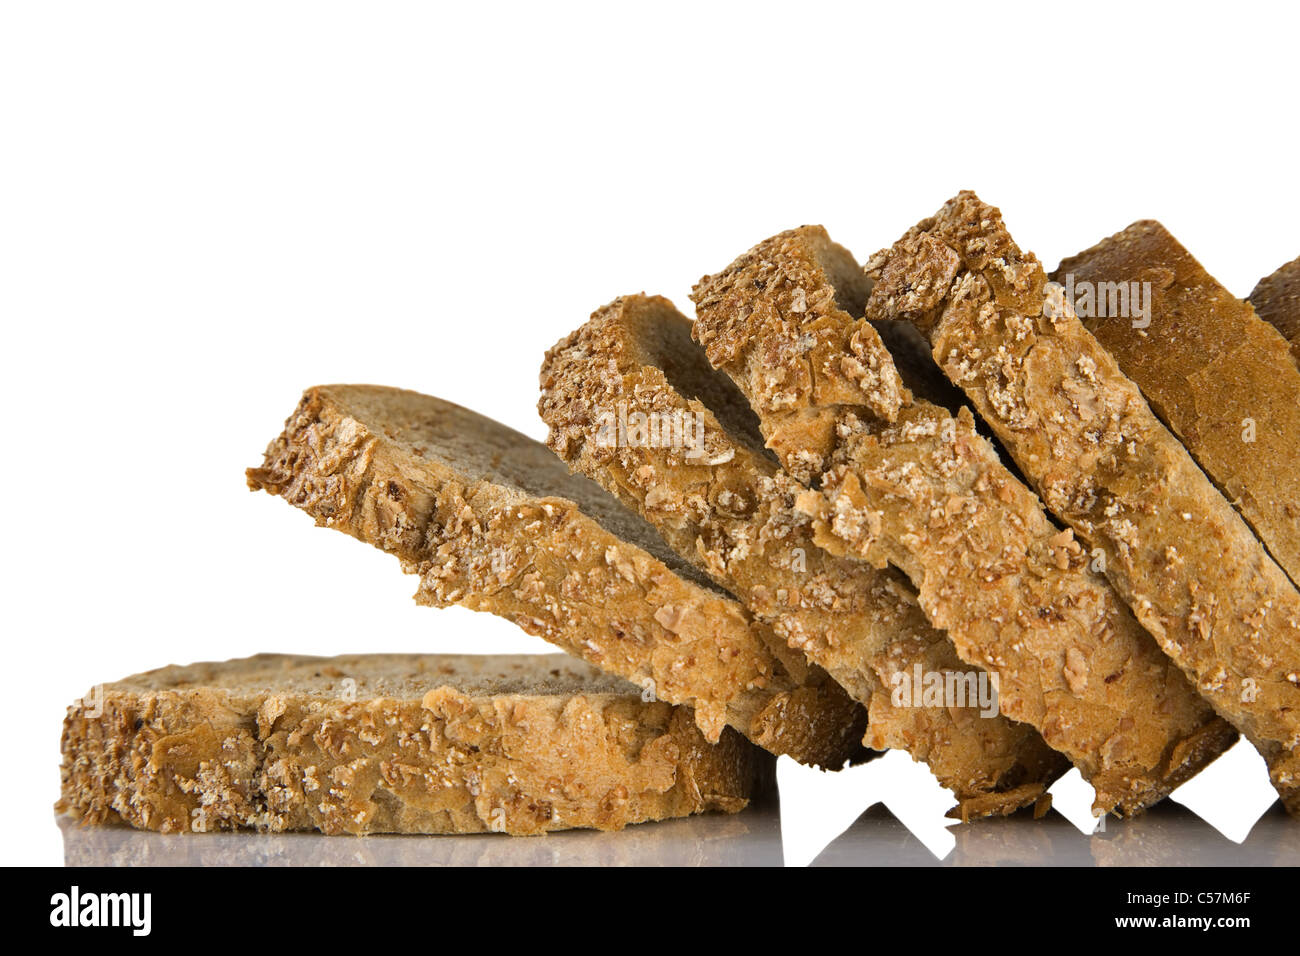 Tranches de pain brun isolé sur un fond blanc, concept d'aliments sains Banque D'Images